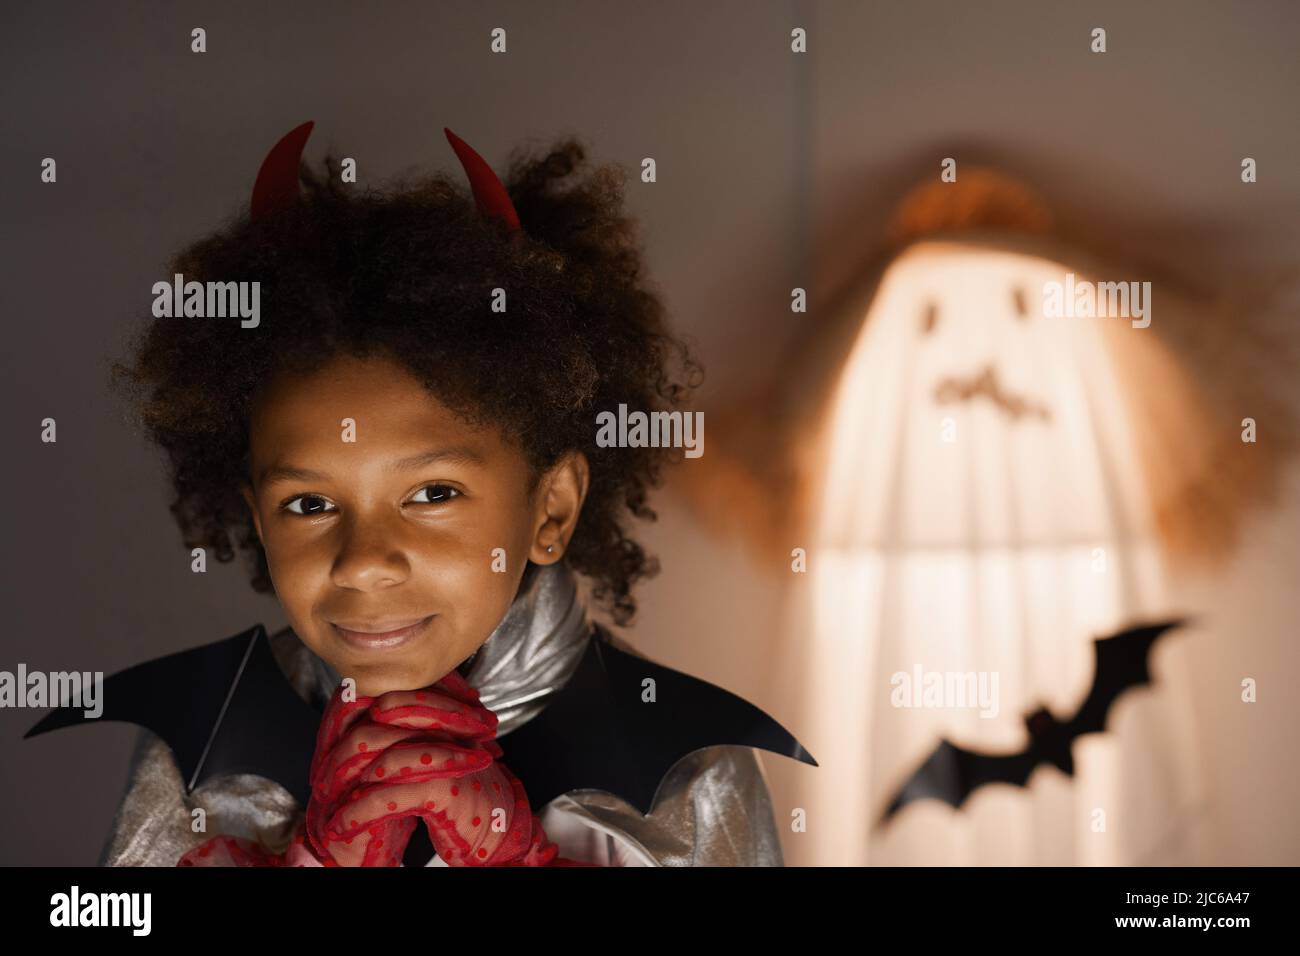 Ritratto di ragazzo afro-americano da sogno in abito Halloween testa appoggiata sulle mani in guanti rossi in camera scura Foto Stock